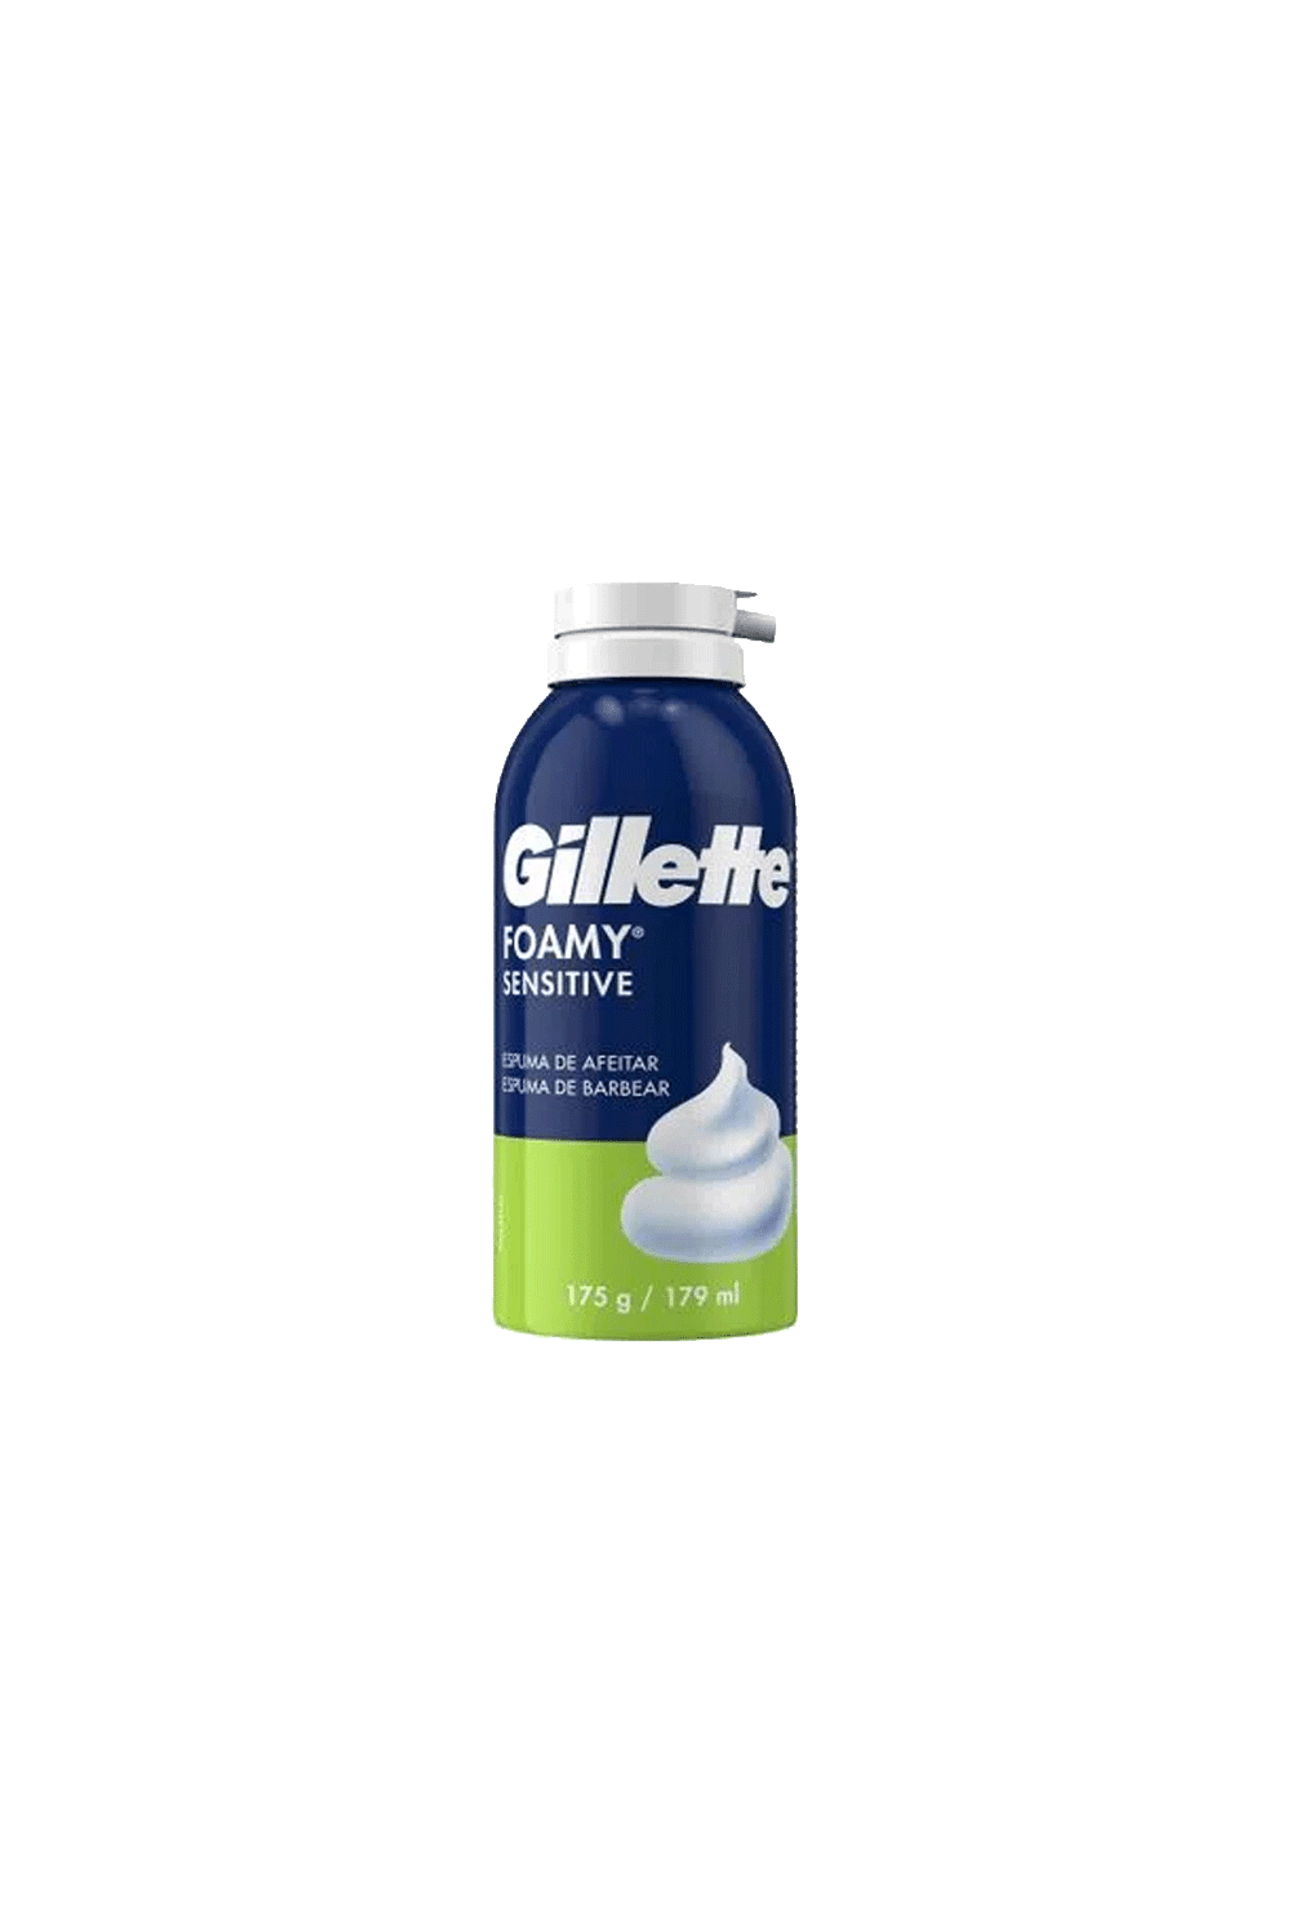 Gillette-Espuma-de-afeitar-Gillete-sensitive-x-175-ml-7500435219648_img1